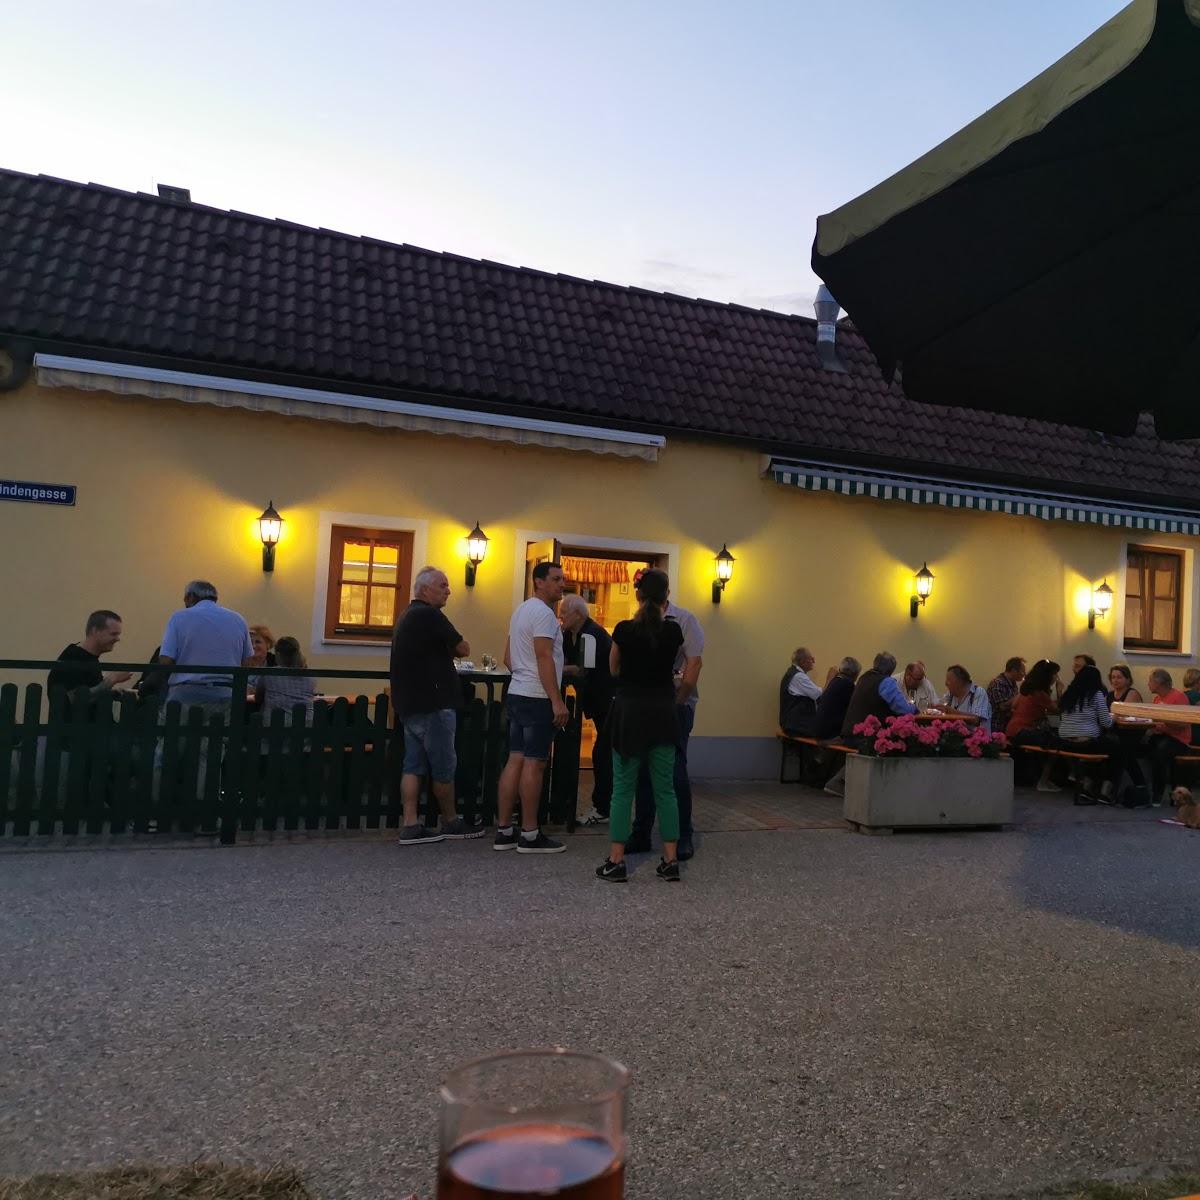 Restaurant "Heuriger Harald Hartl" in Reisenberg